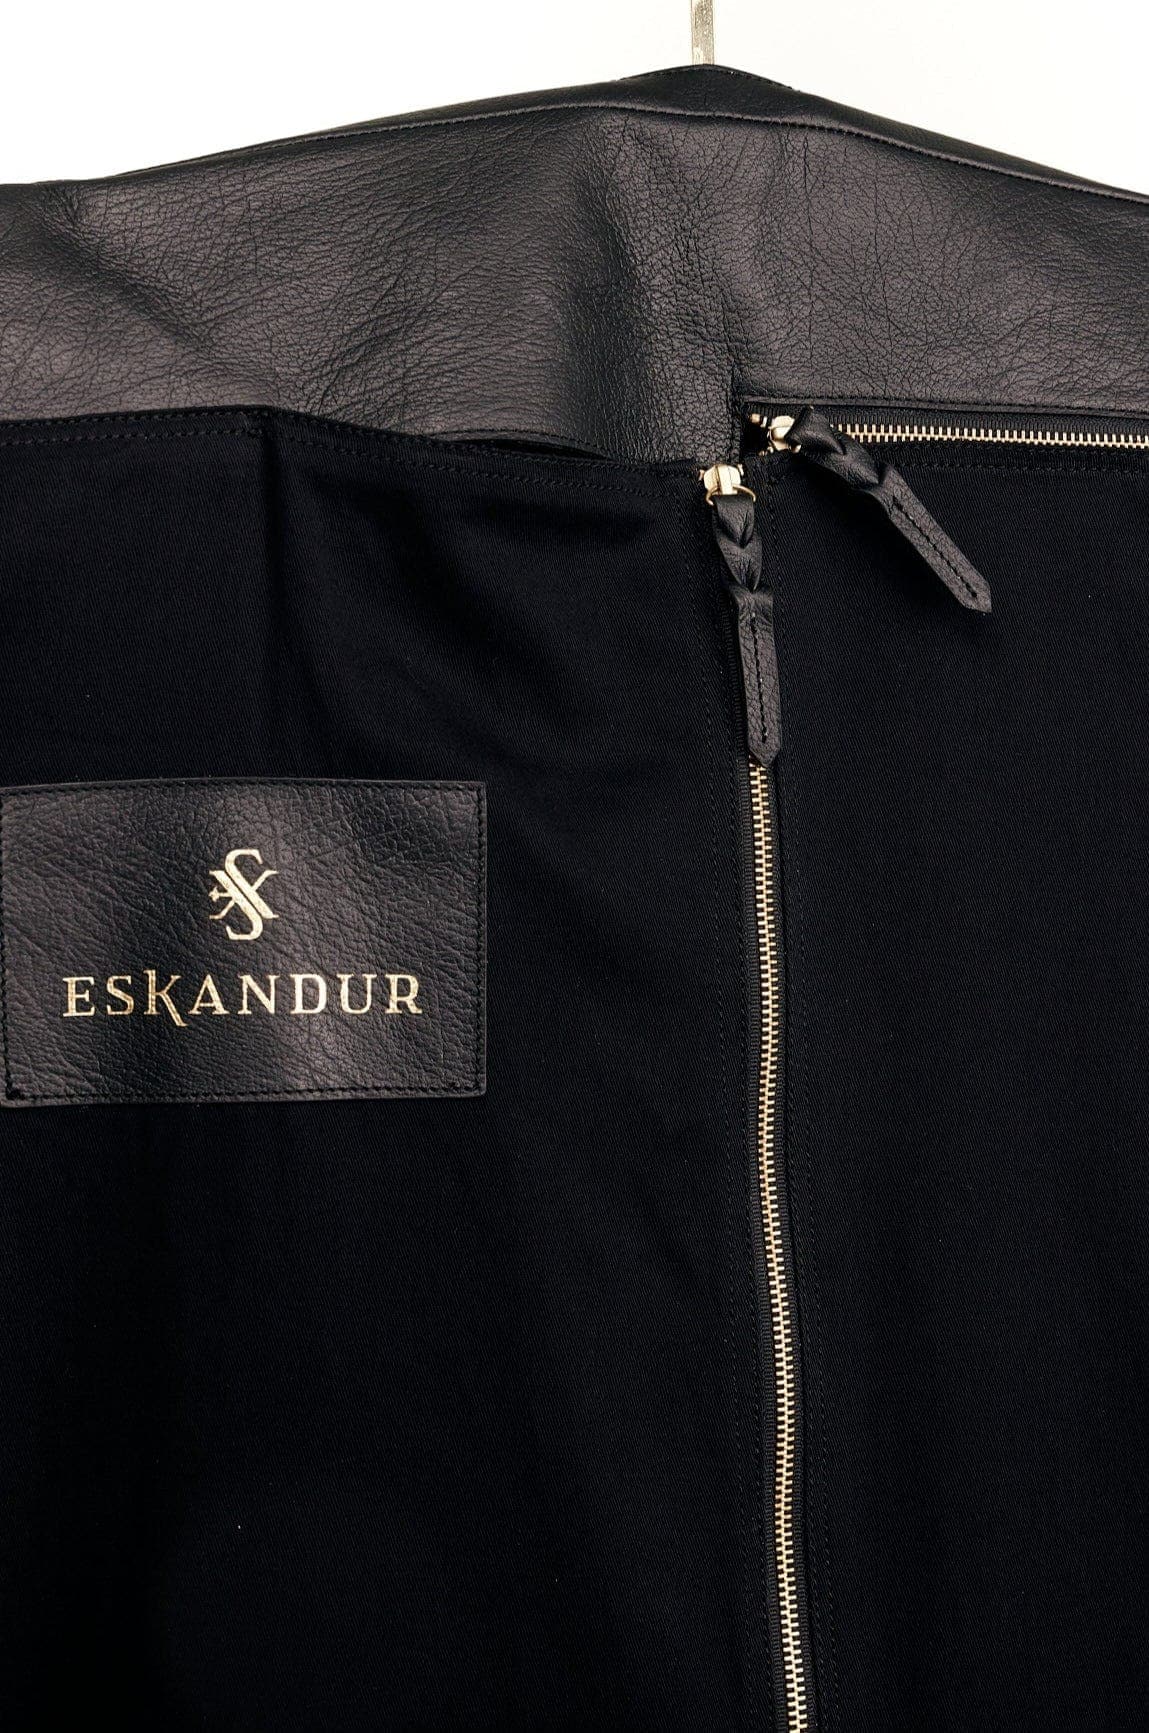 ESKANDUR GAR01 Leather Garment Bag - Eskandur